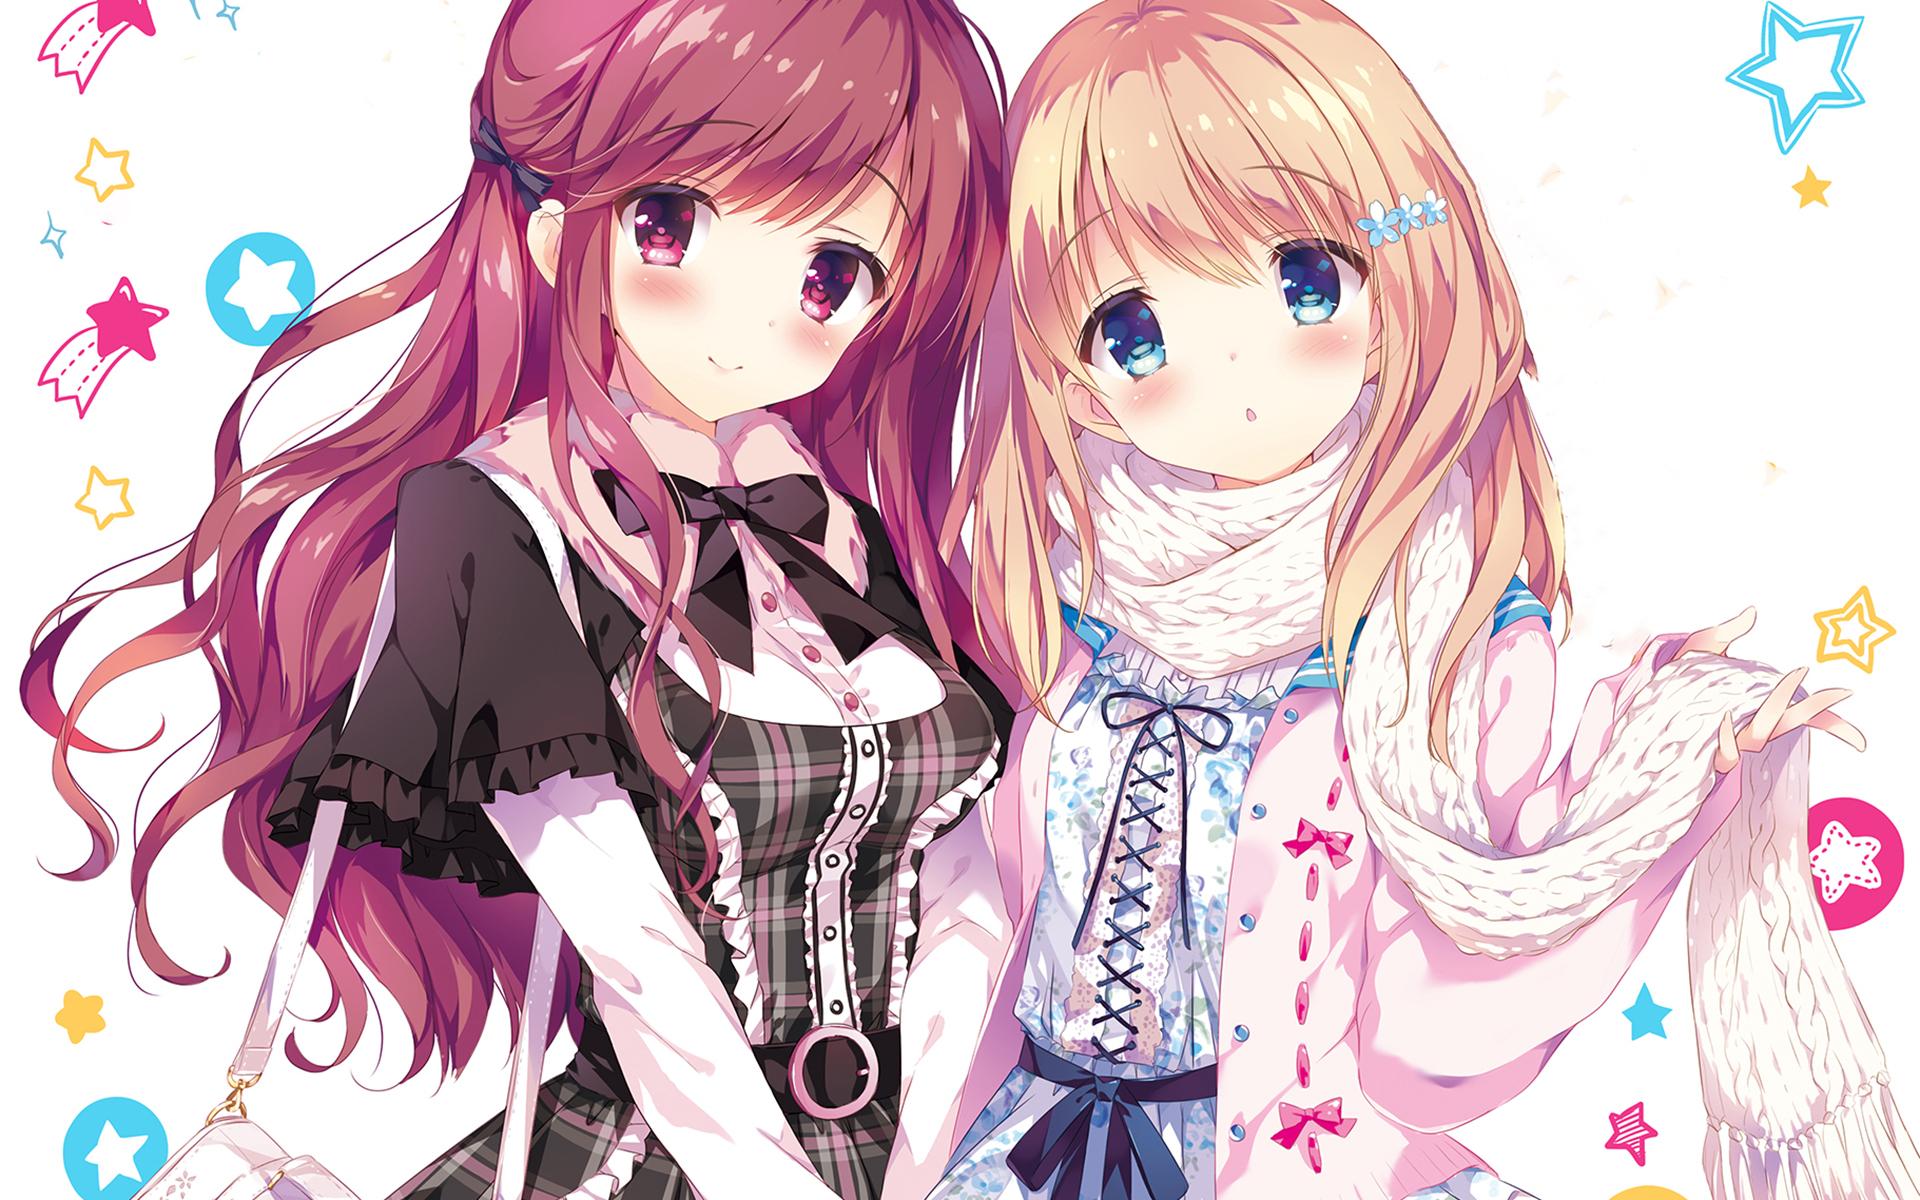 Original anime girl school uniform friend girls cute beautiful dress long  hair wallpaper  2484x3500  818919  WallpaperUP